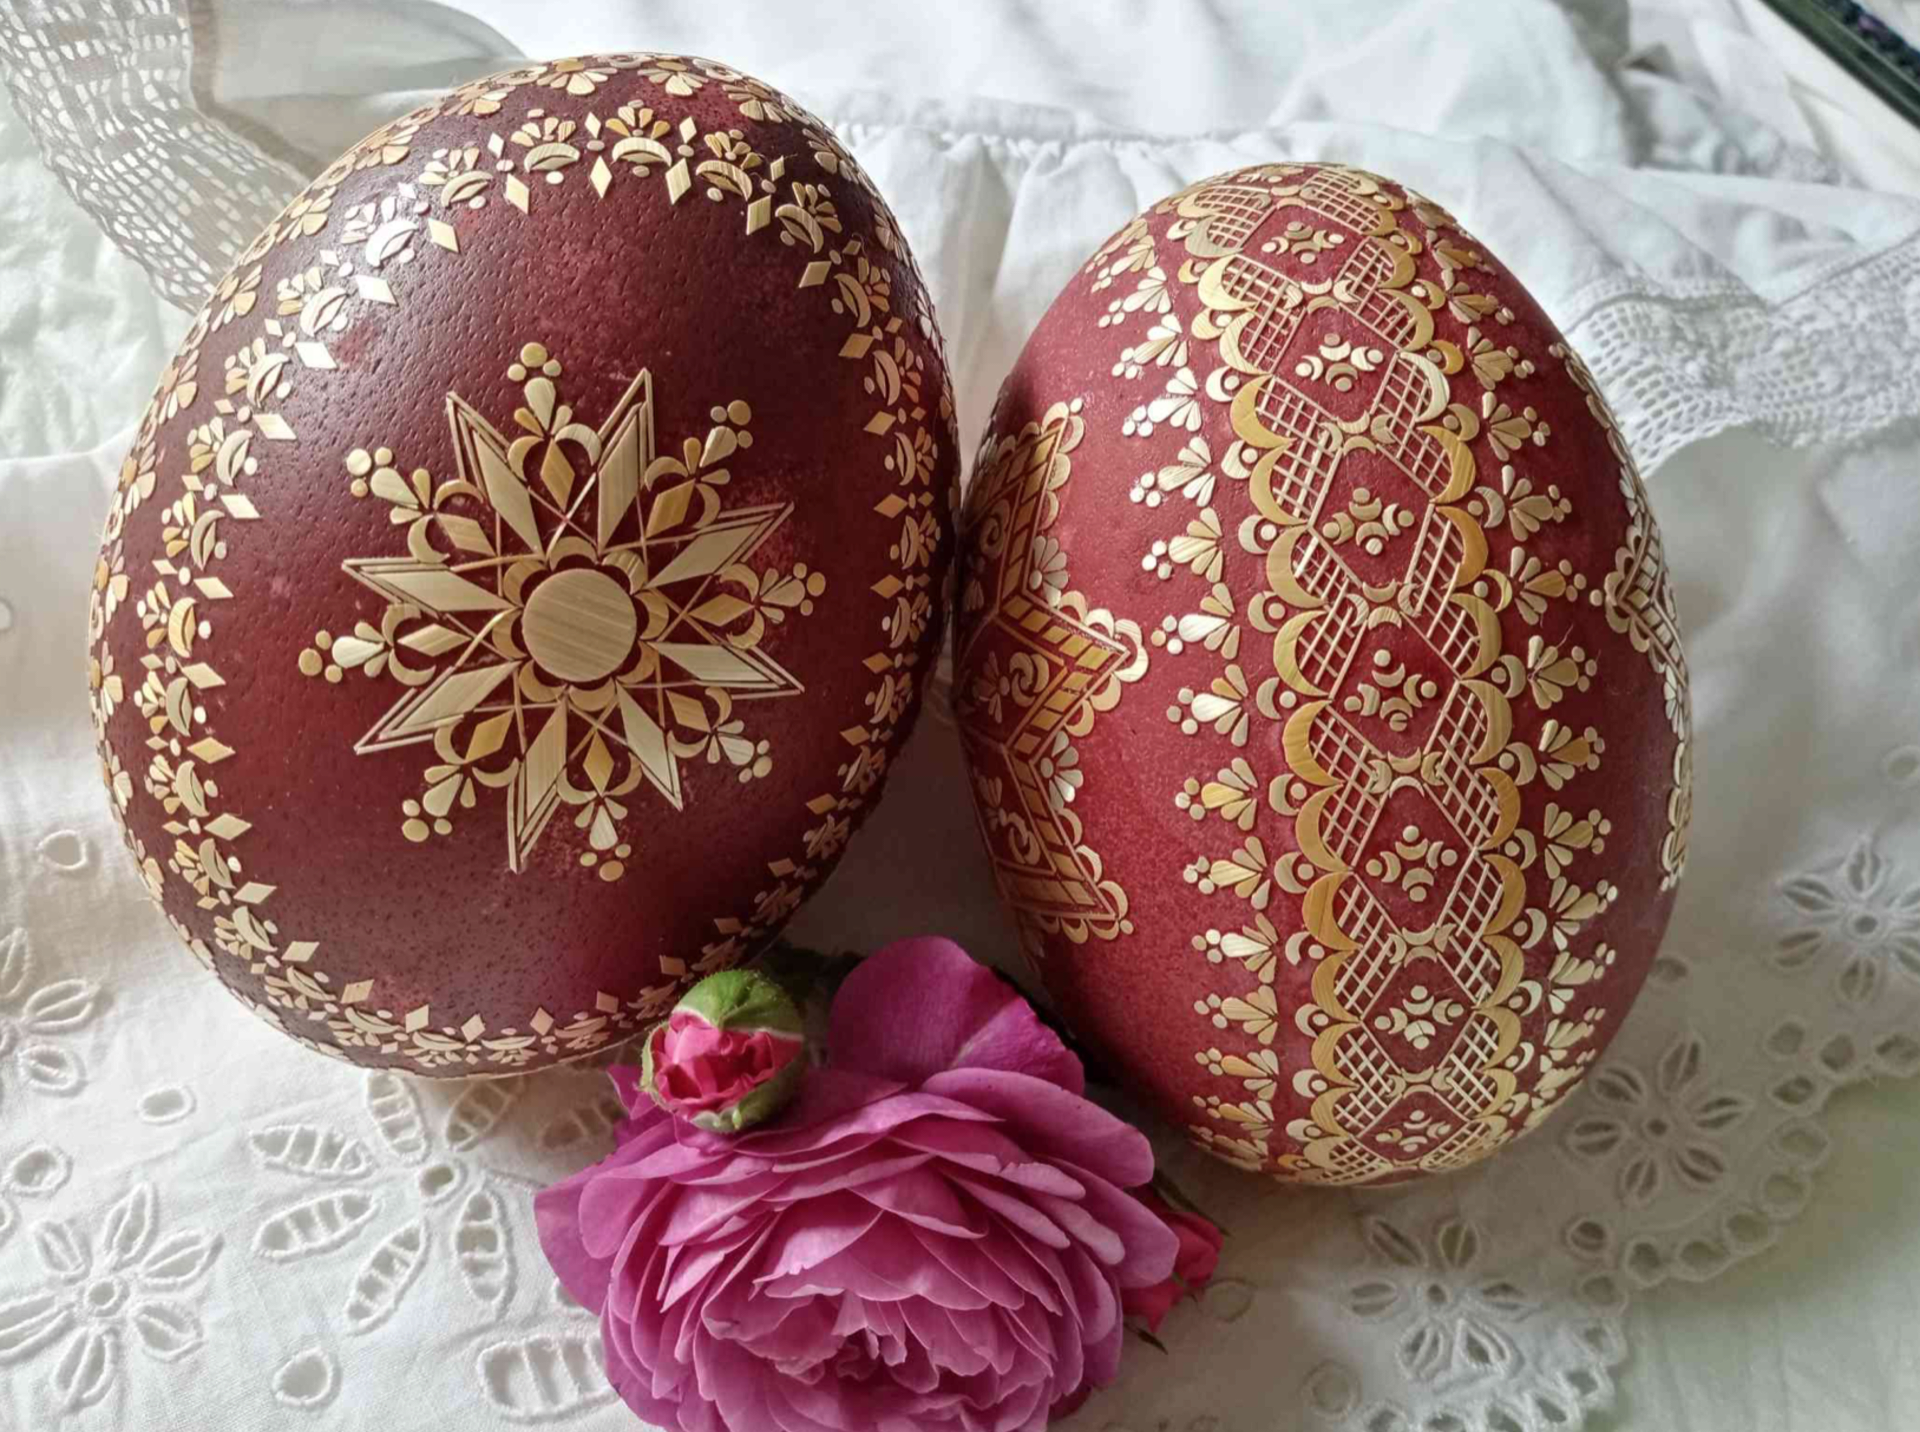 Velikonoční kraslice od členů Asociace malířů a malířek kraslic ČR